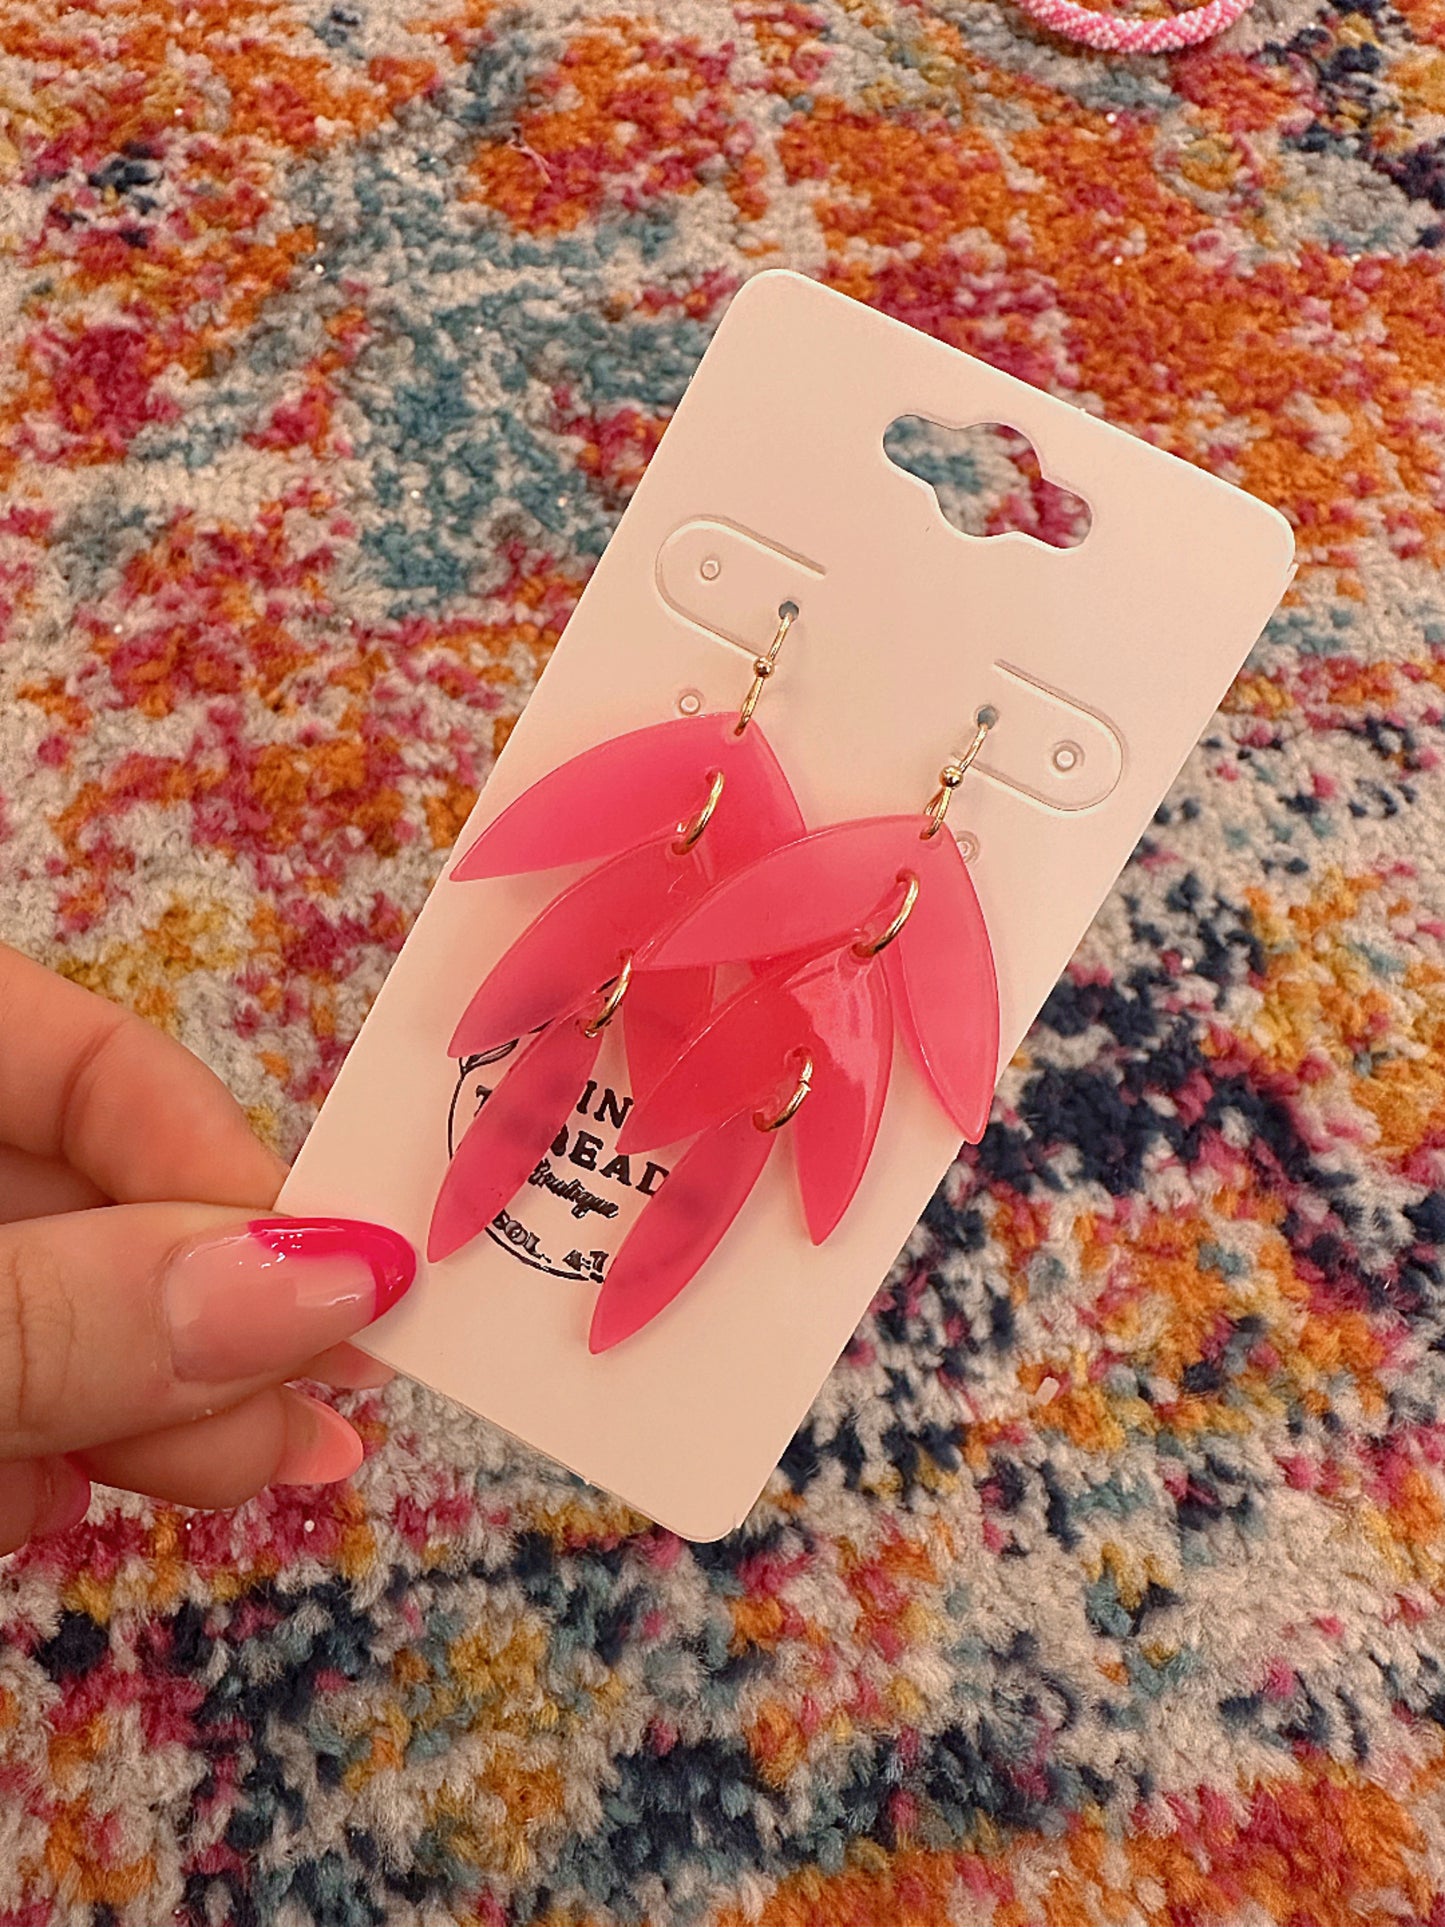 Pink Leaf Earrings